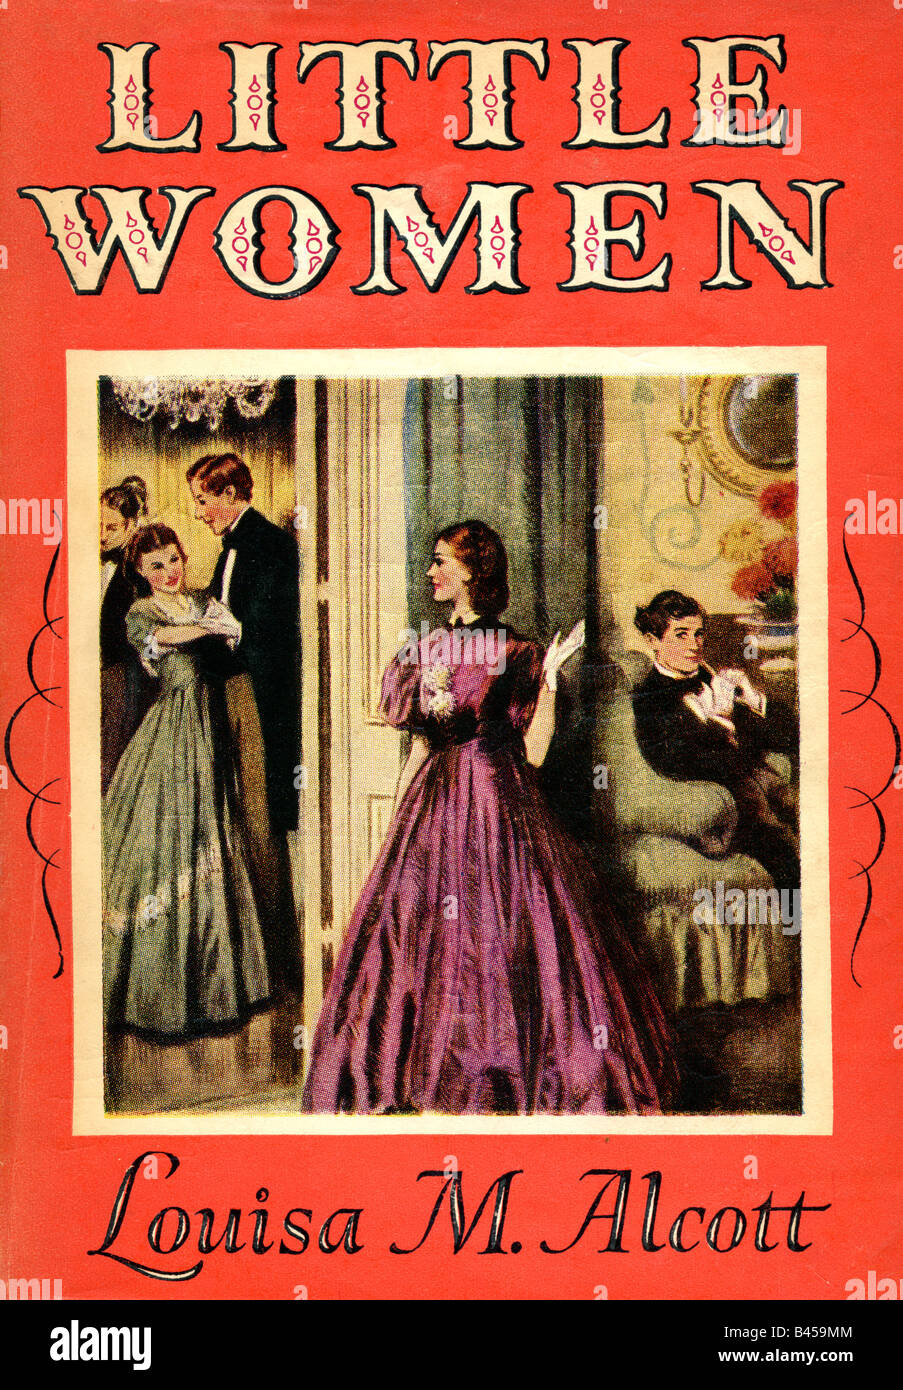 Peu de femmes 1868 par Louisa M Alcott publié par Dent de Londres et Dutton de New York 1950 pour un usage éditorial uniquement Banque D'Images